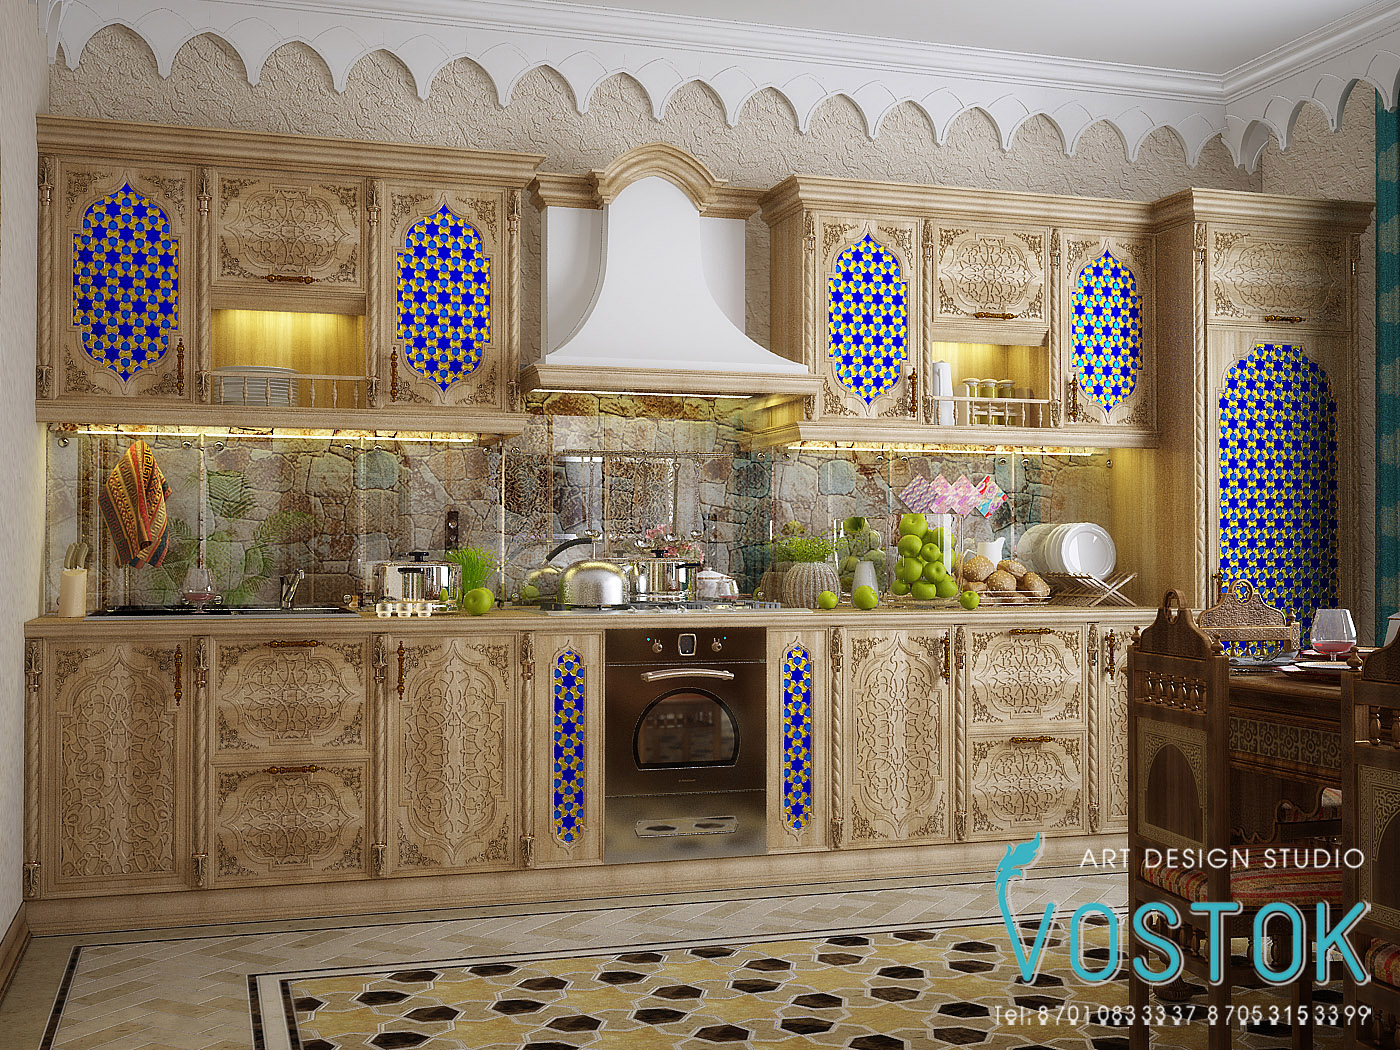 Этническая кухня. Марокко Капитолий марокканский стиль. Кухня в мавританском стиле. Кухня в стиле Марокко. Этно мавританский стиль интерьера.